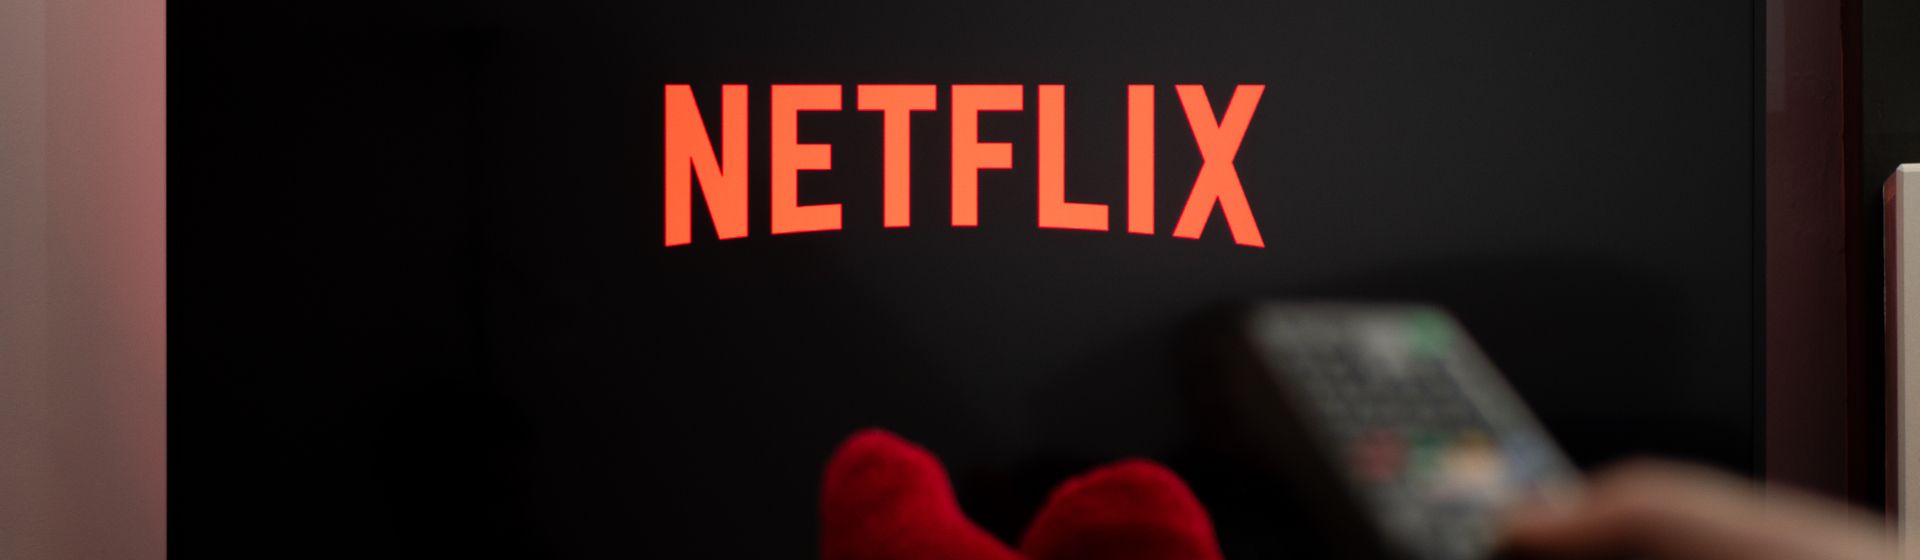 Como baixar Netflix para TV box? Confira o passo a passo